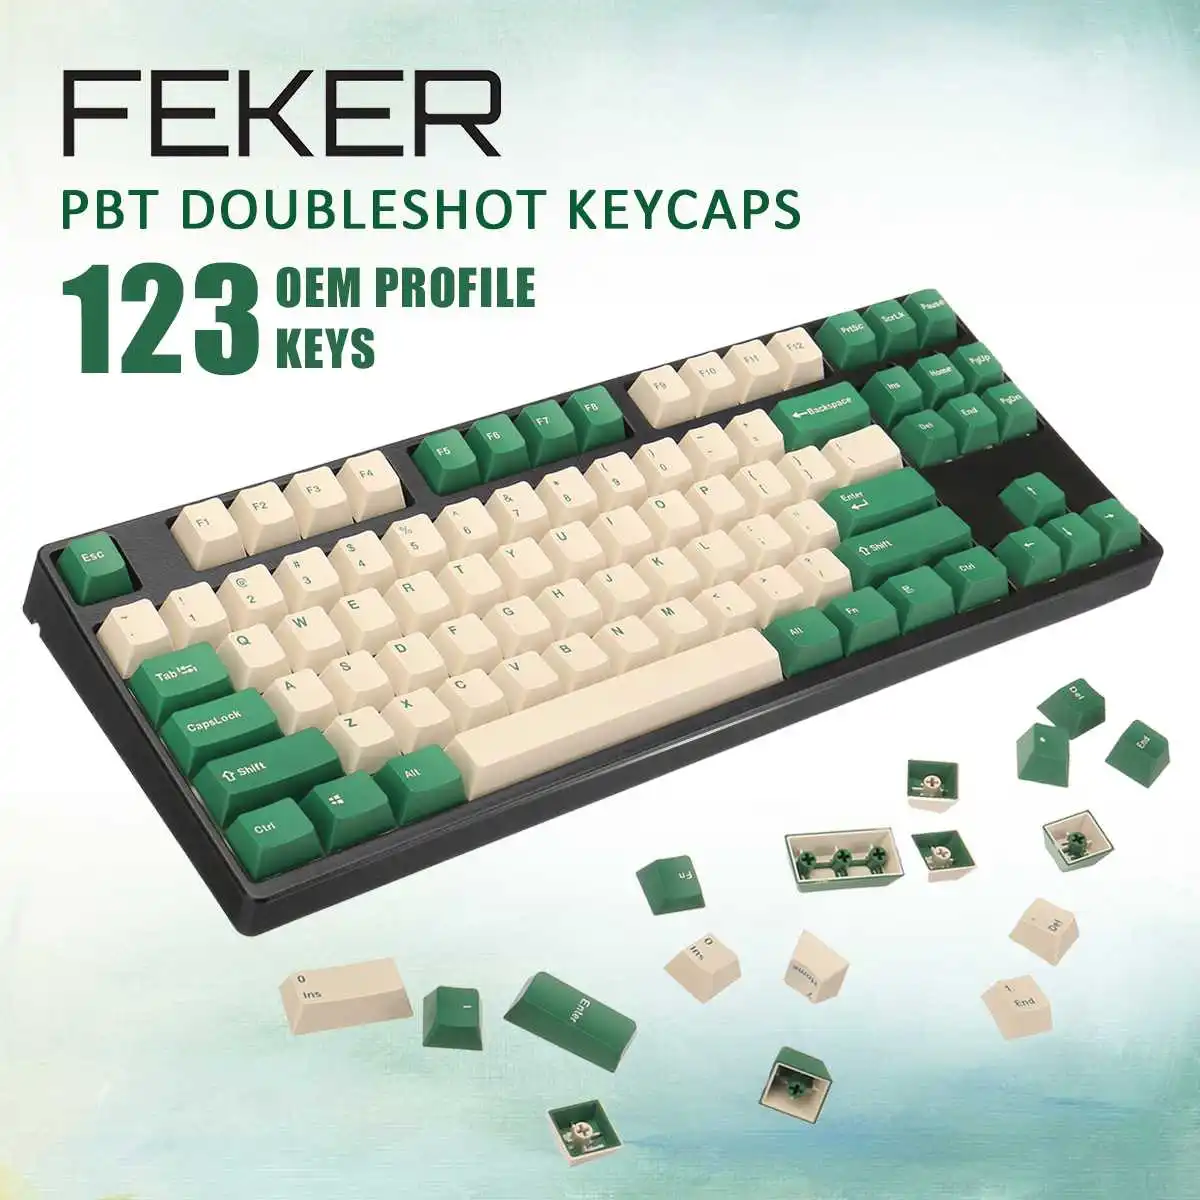 

Колпачки для клавиш Feker 123 клавиш Изумрудный лес PBT подходят для механической клавиатуры переключатели Cherry MX OEM профиль краситель-Sub колпачок